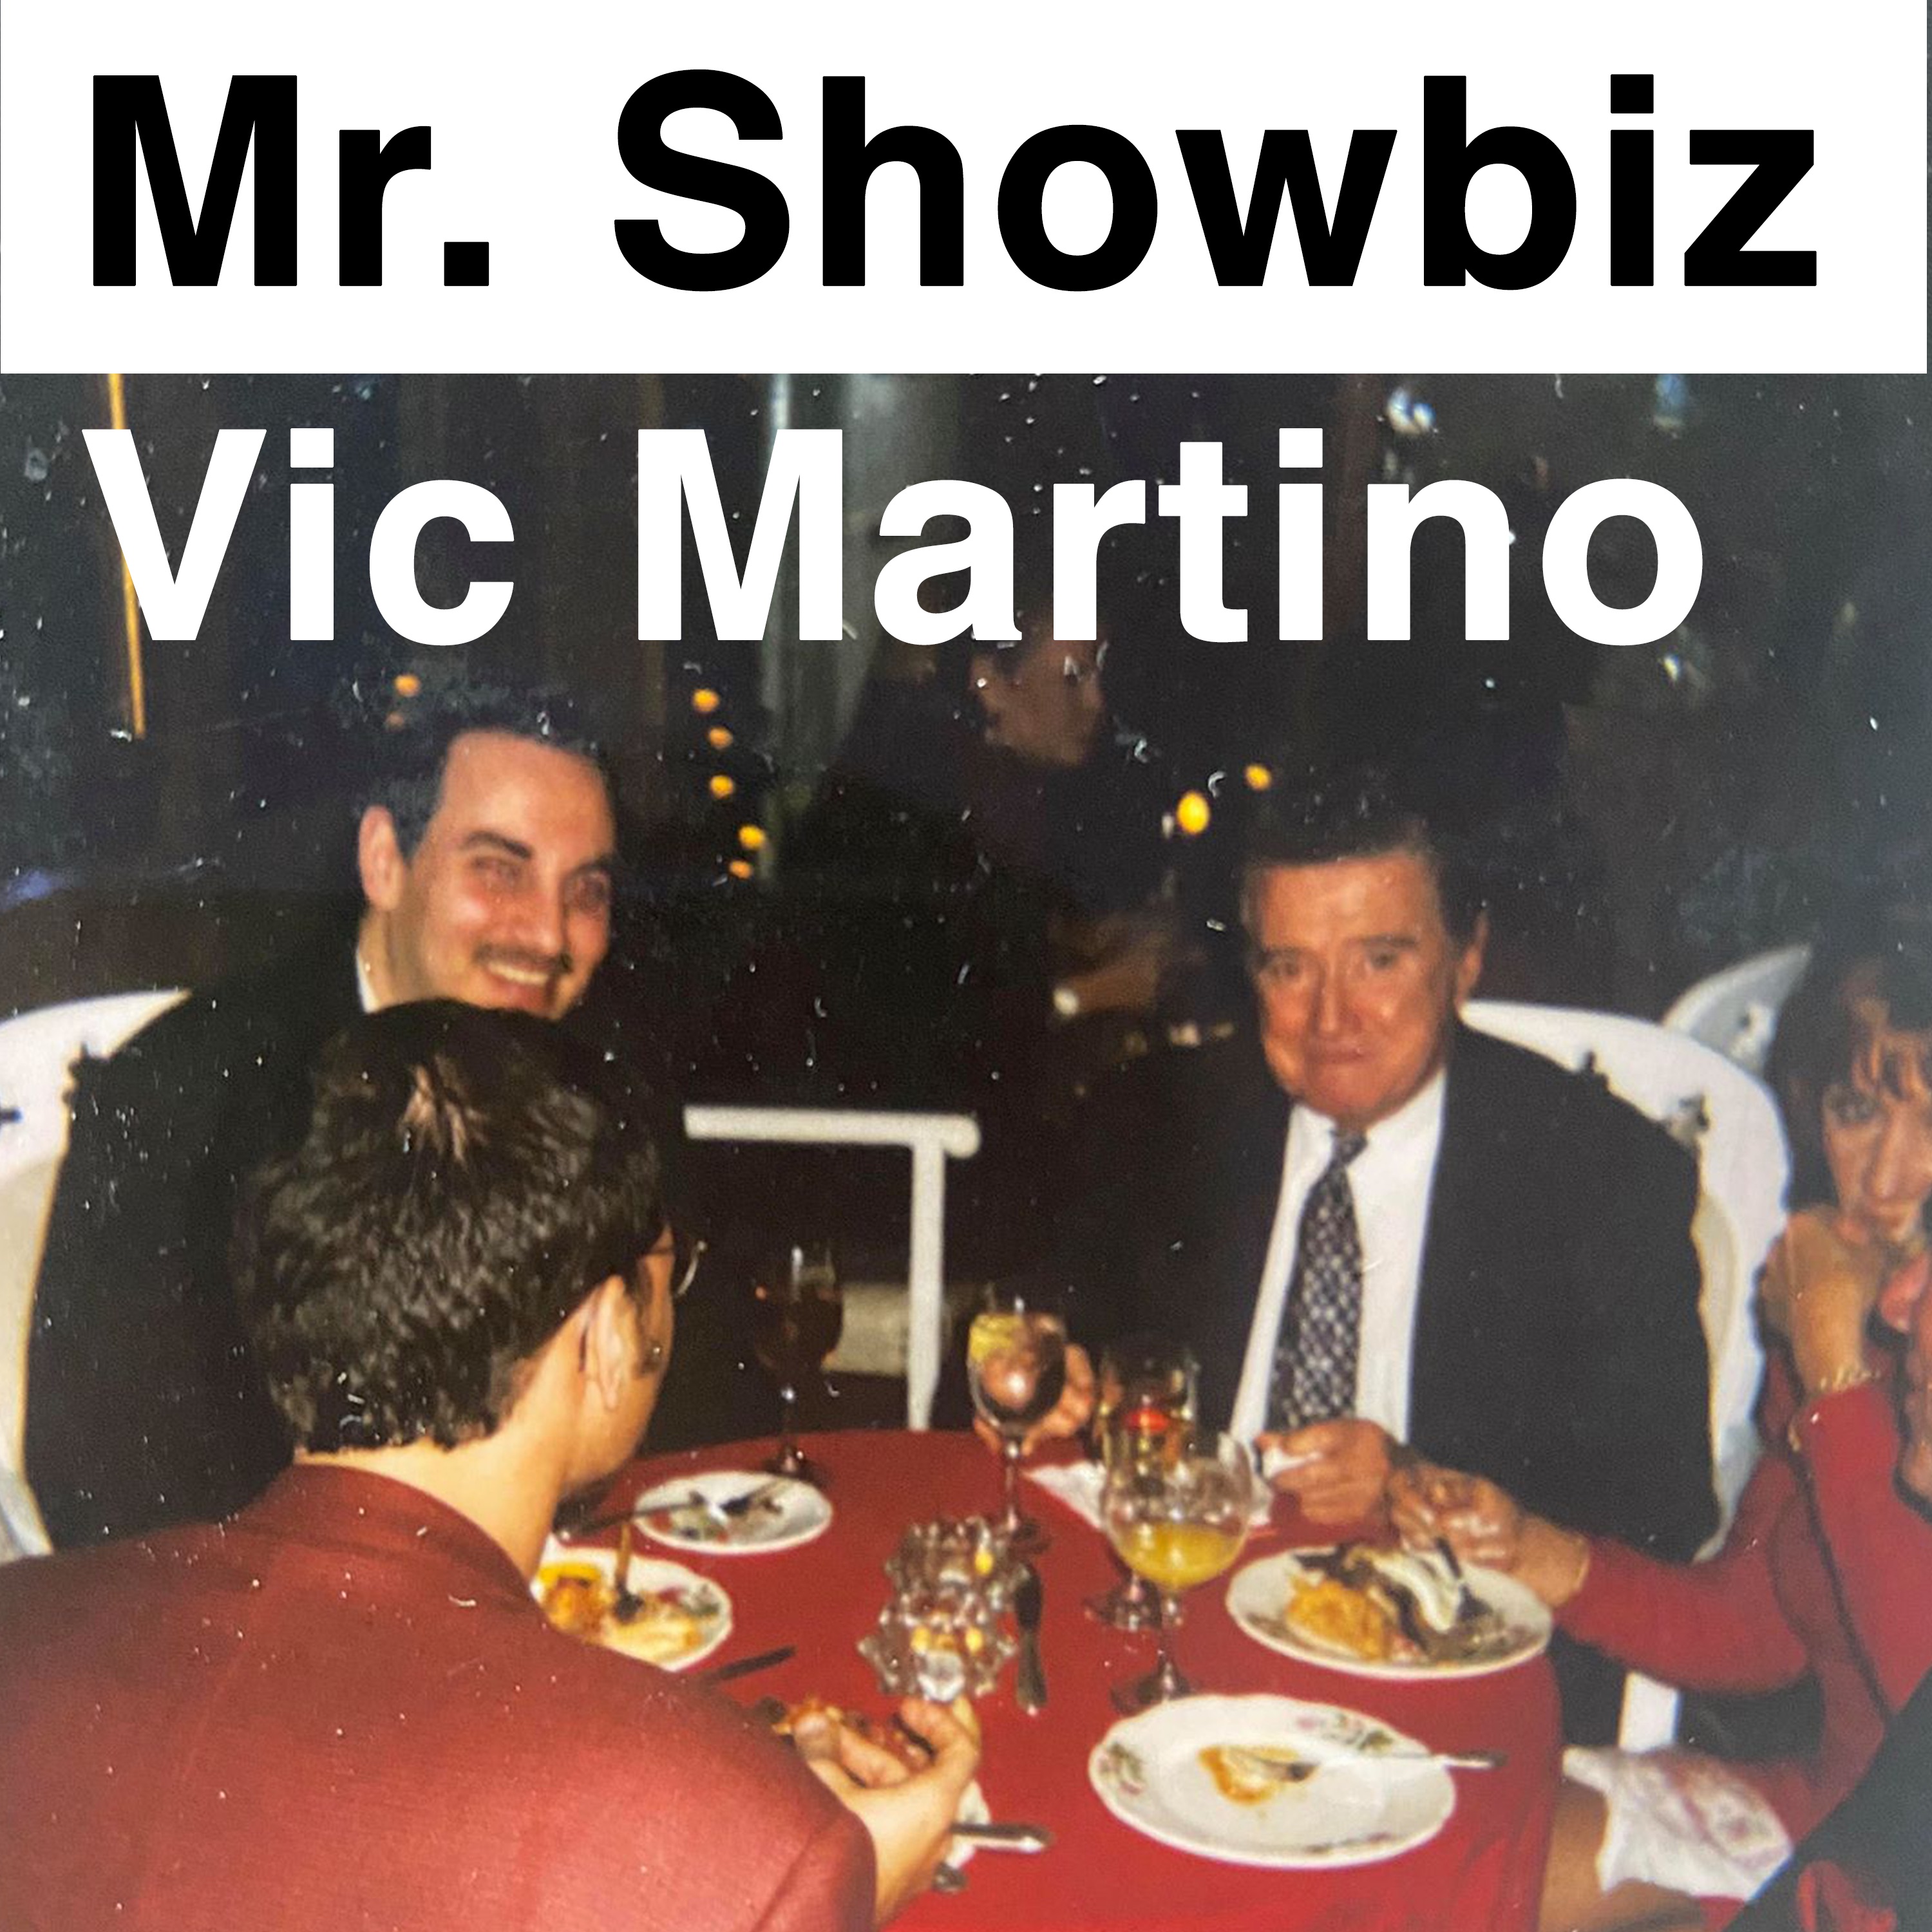 Mr. Showbiz - The Vic Martino Podcast